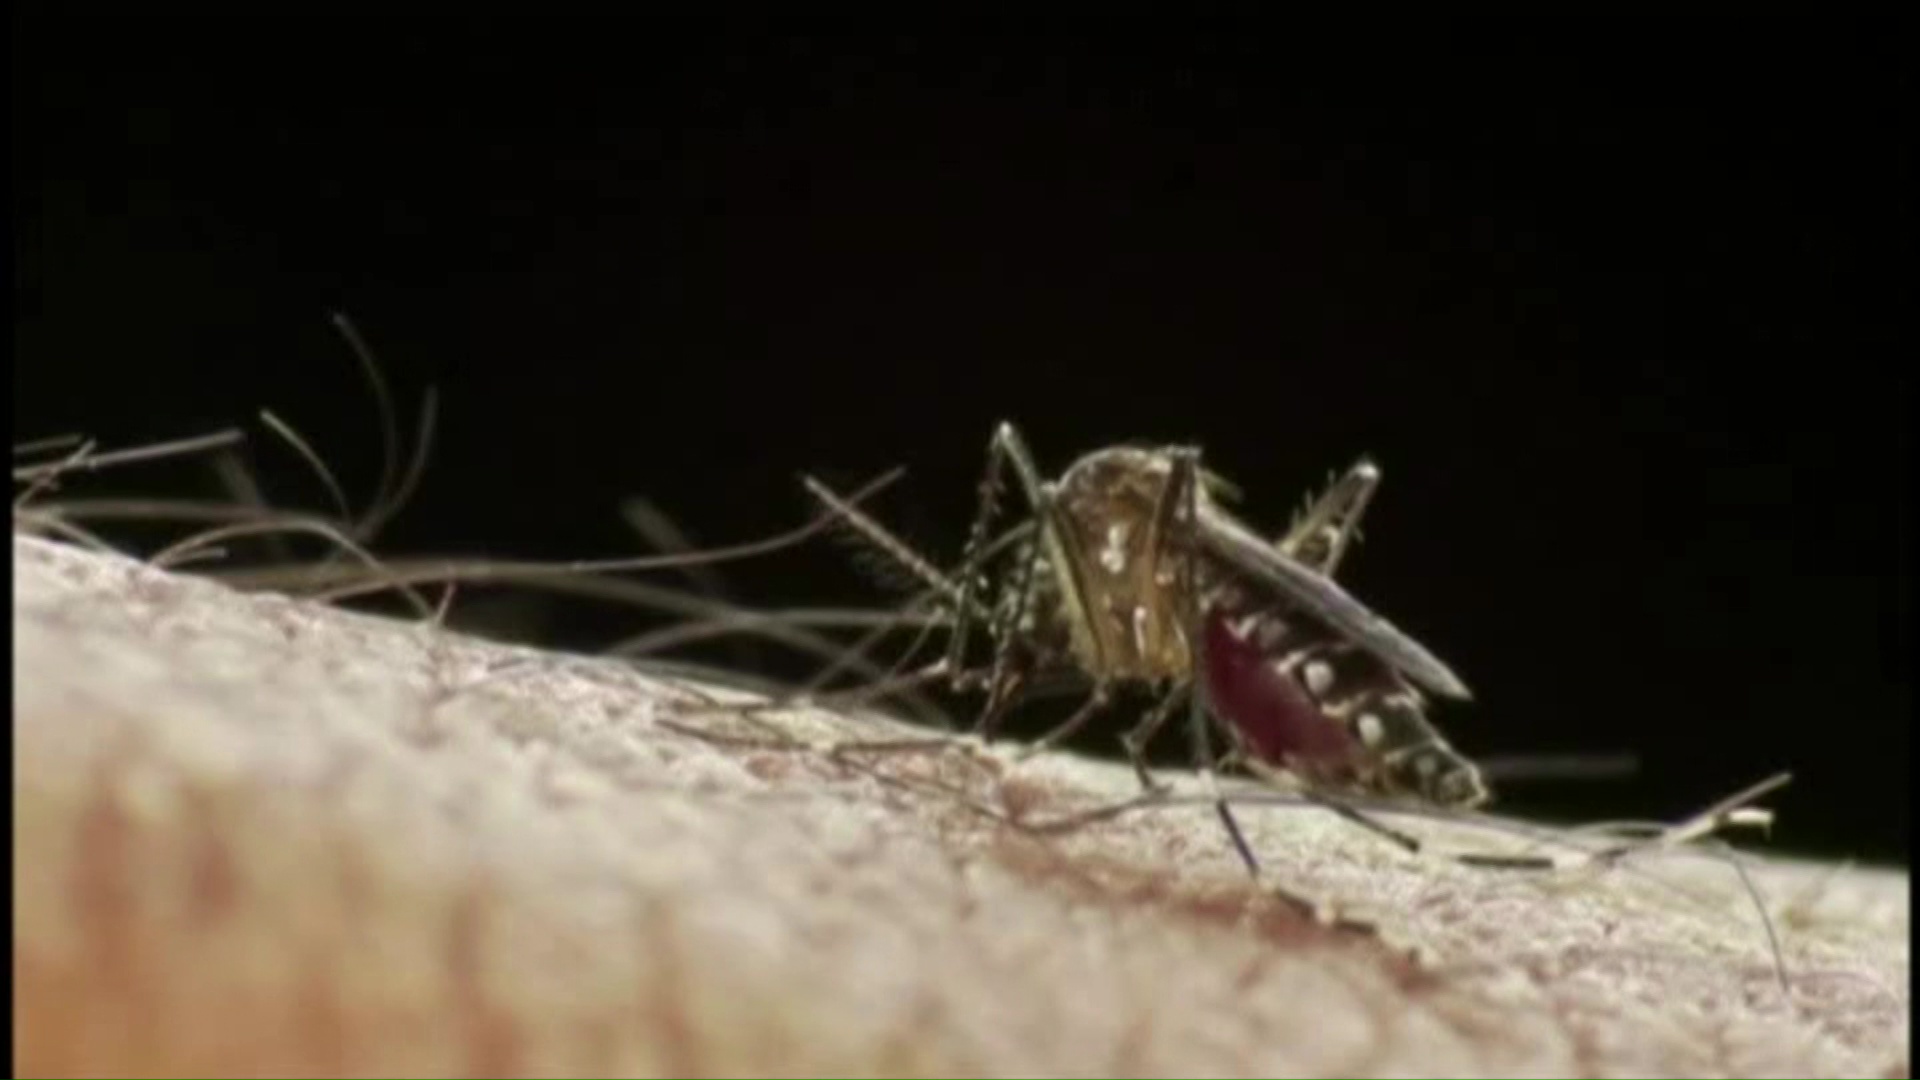 Semana Santa podría aumentar casos dengue